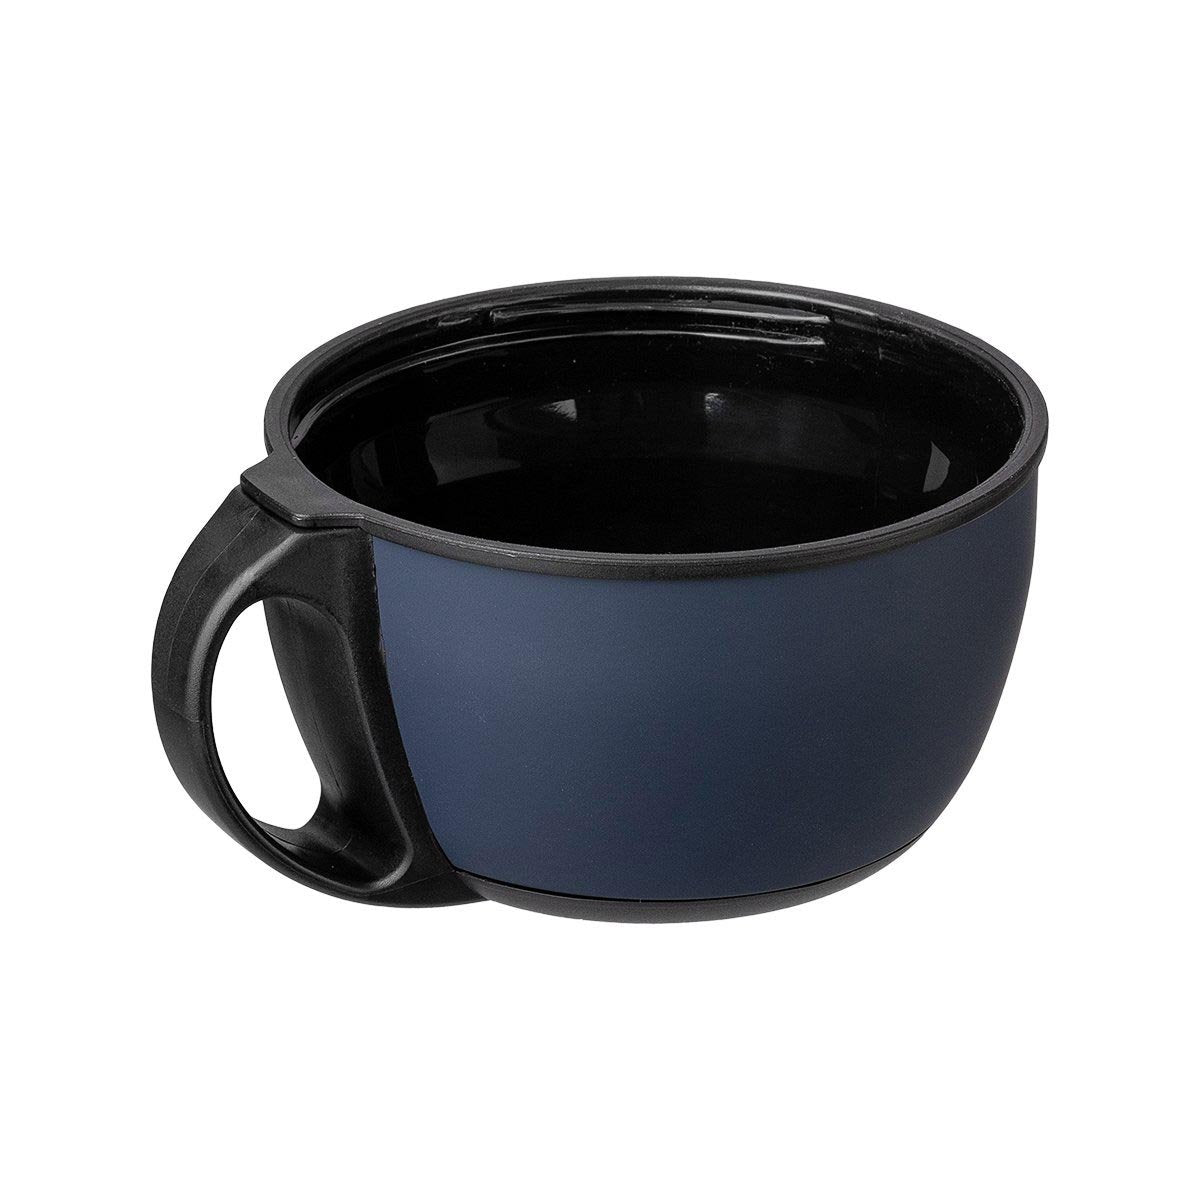 A lid cup, blue color